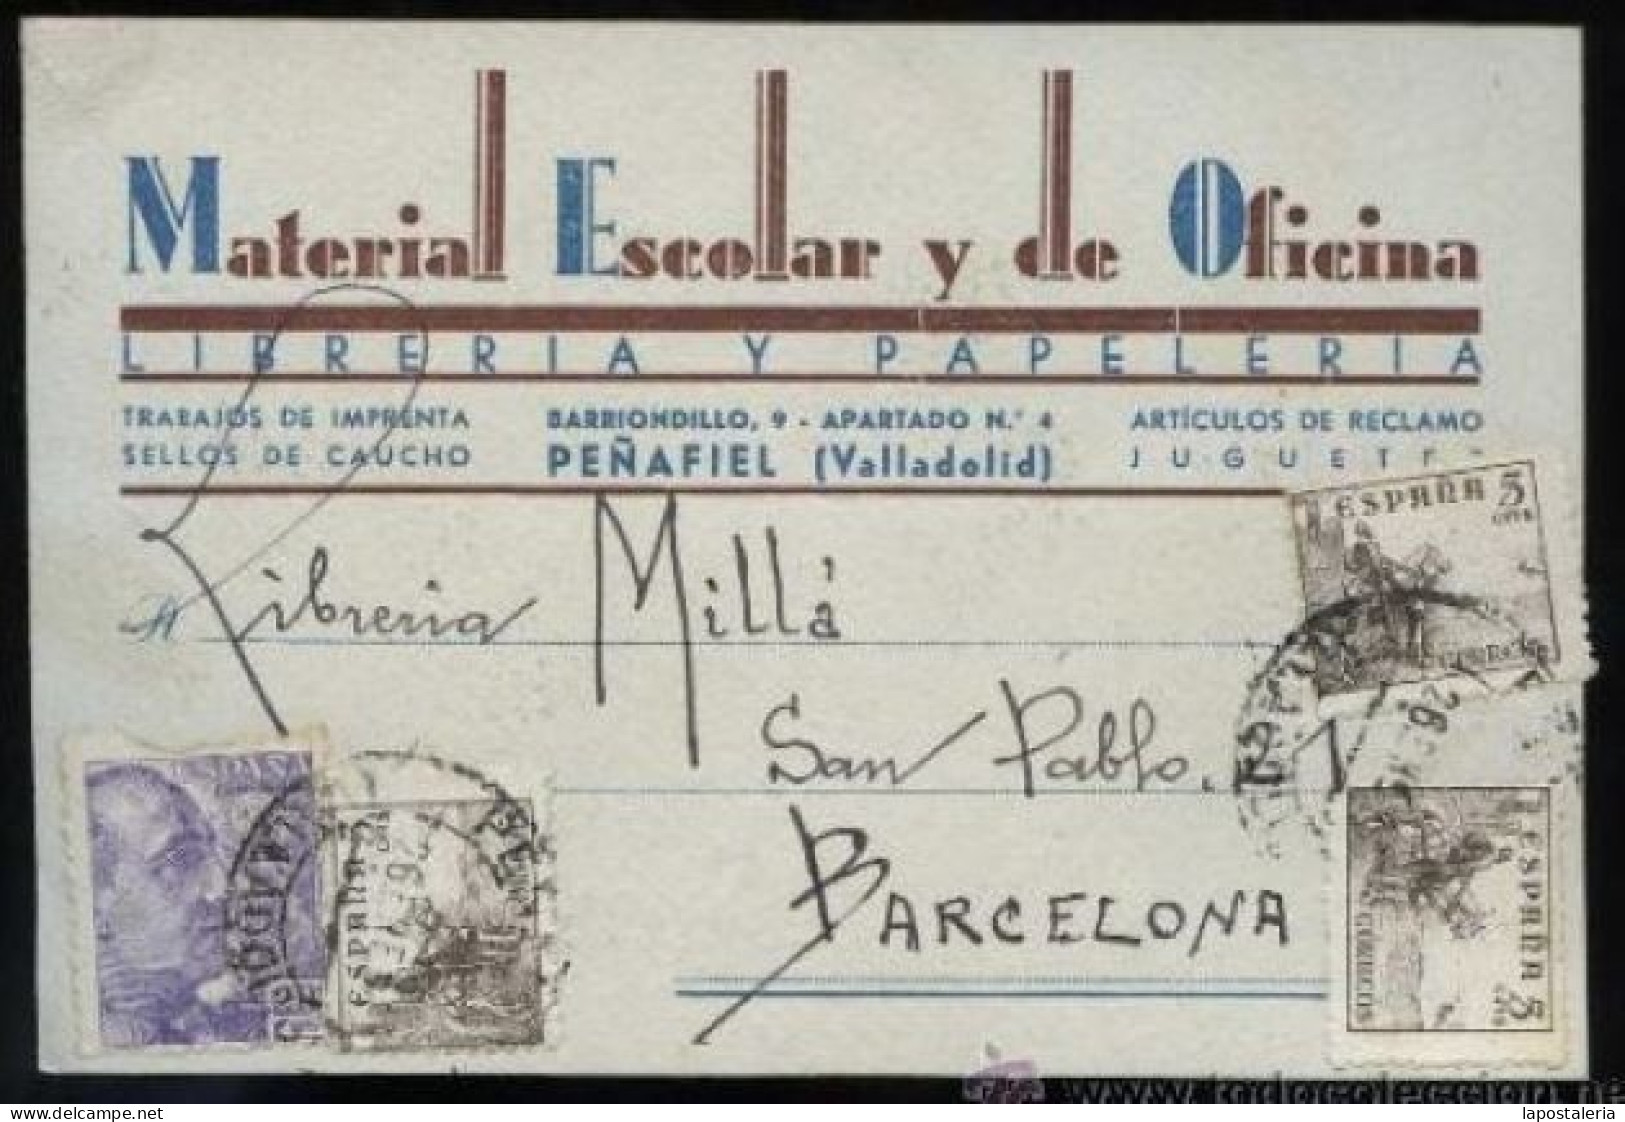 Peñafiel. *Material Escolar Y De Oficina...* Circulada 1947. - Valladolid